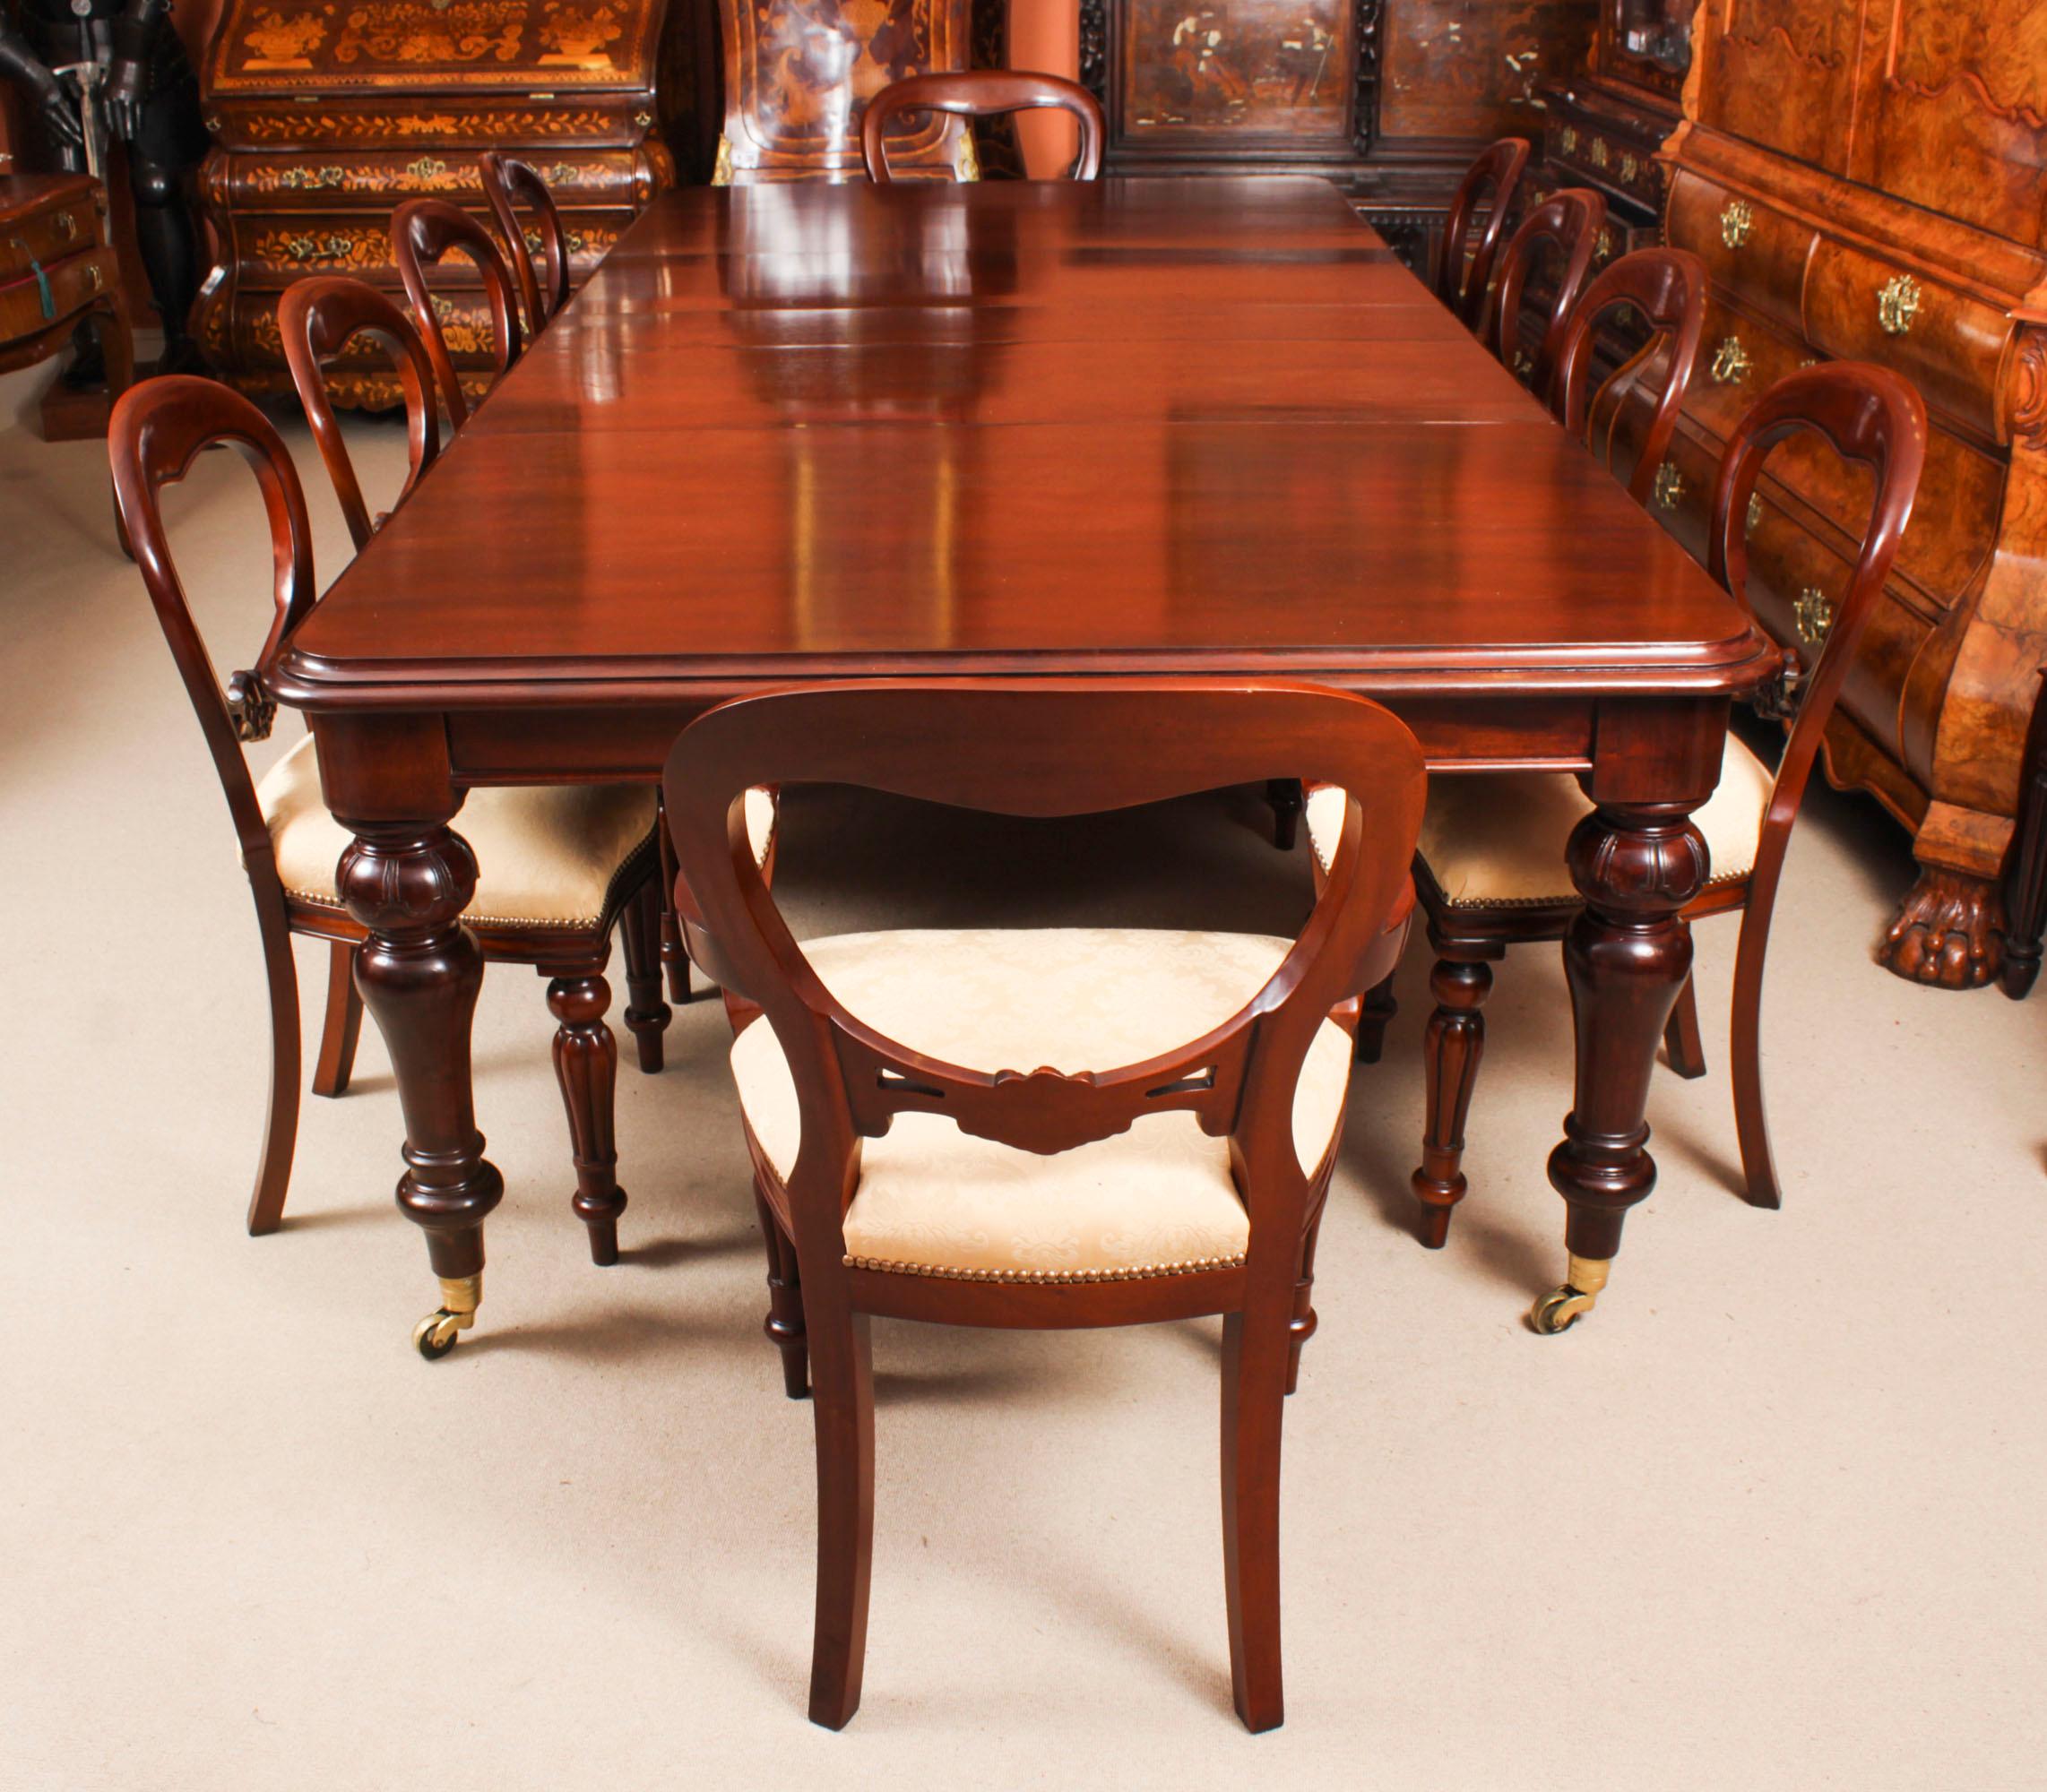 Il s'agit d'une fantastique  Ensemble de salle à manger comprenant une table de salle à manger antique William IV, datant de 1835,  avec un jeu de dix ballons de retour  chaises de salle à manger, datant du dernier quart du 20e siècle. 

La